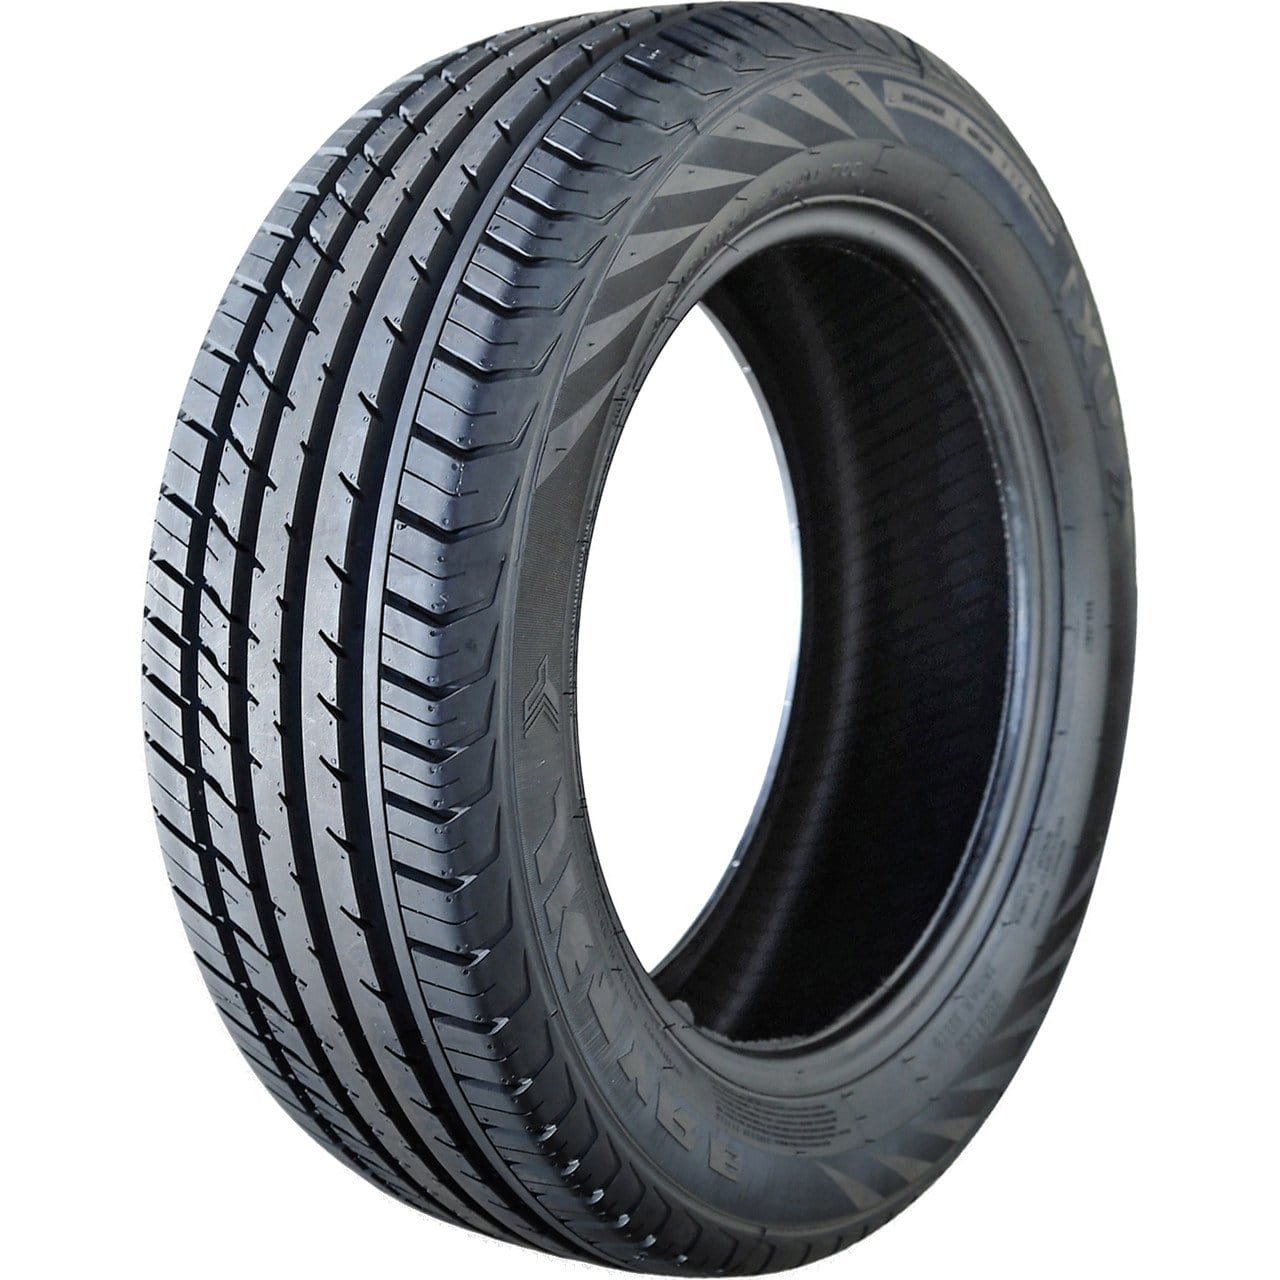 Image of JK Tyre UX1 225/50R17 93V AS A/S All Season Tire